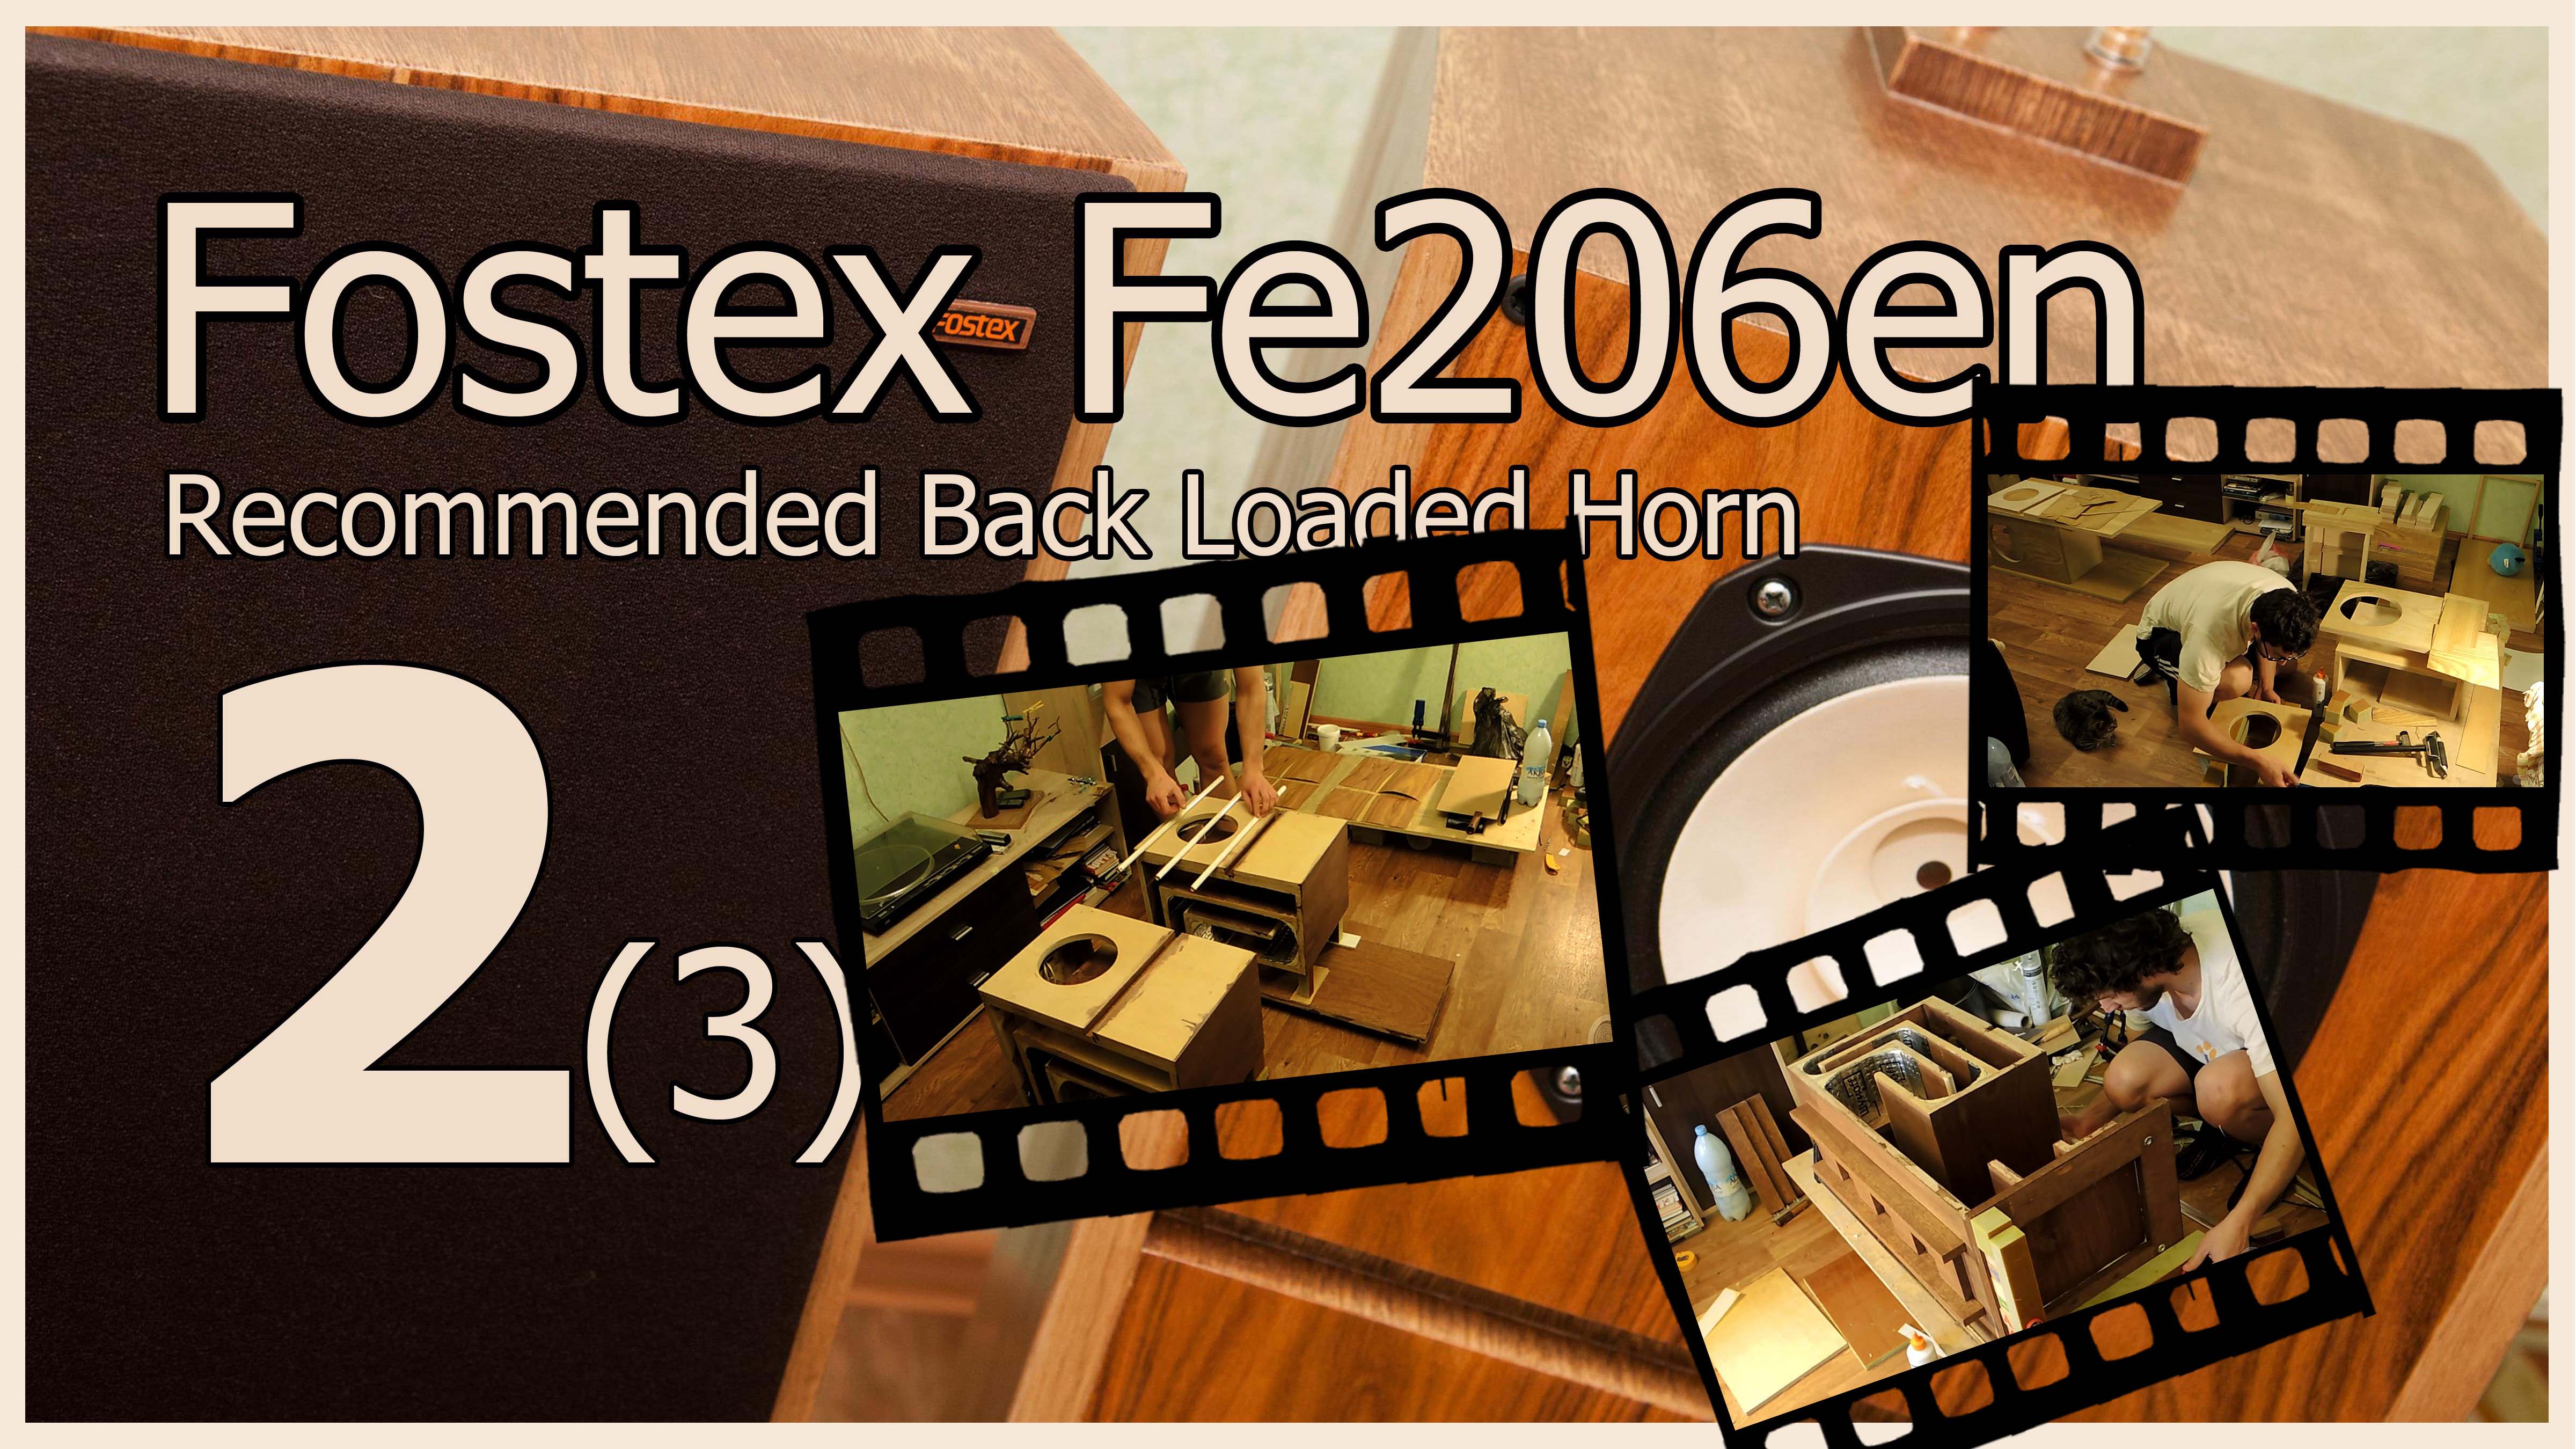 Fostex обратно нагруженный рупор. Fostex 206 en фильтр. Обратный рупор на Fostex Fe 206e чертежи. Fostex 206en кроссовер.